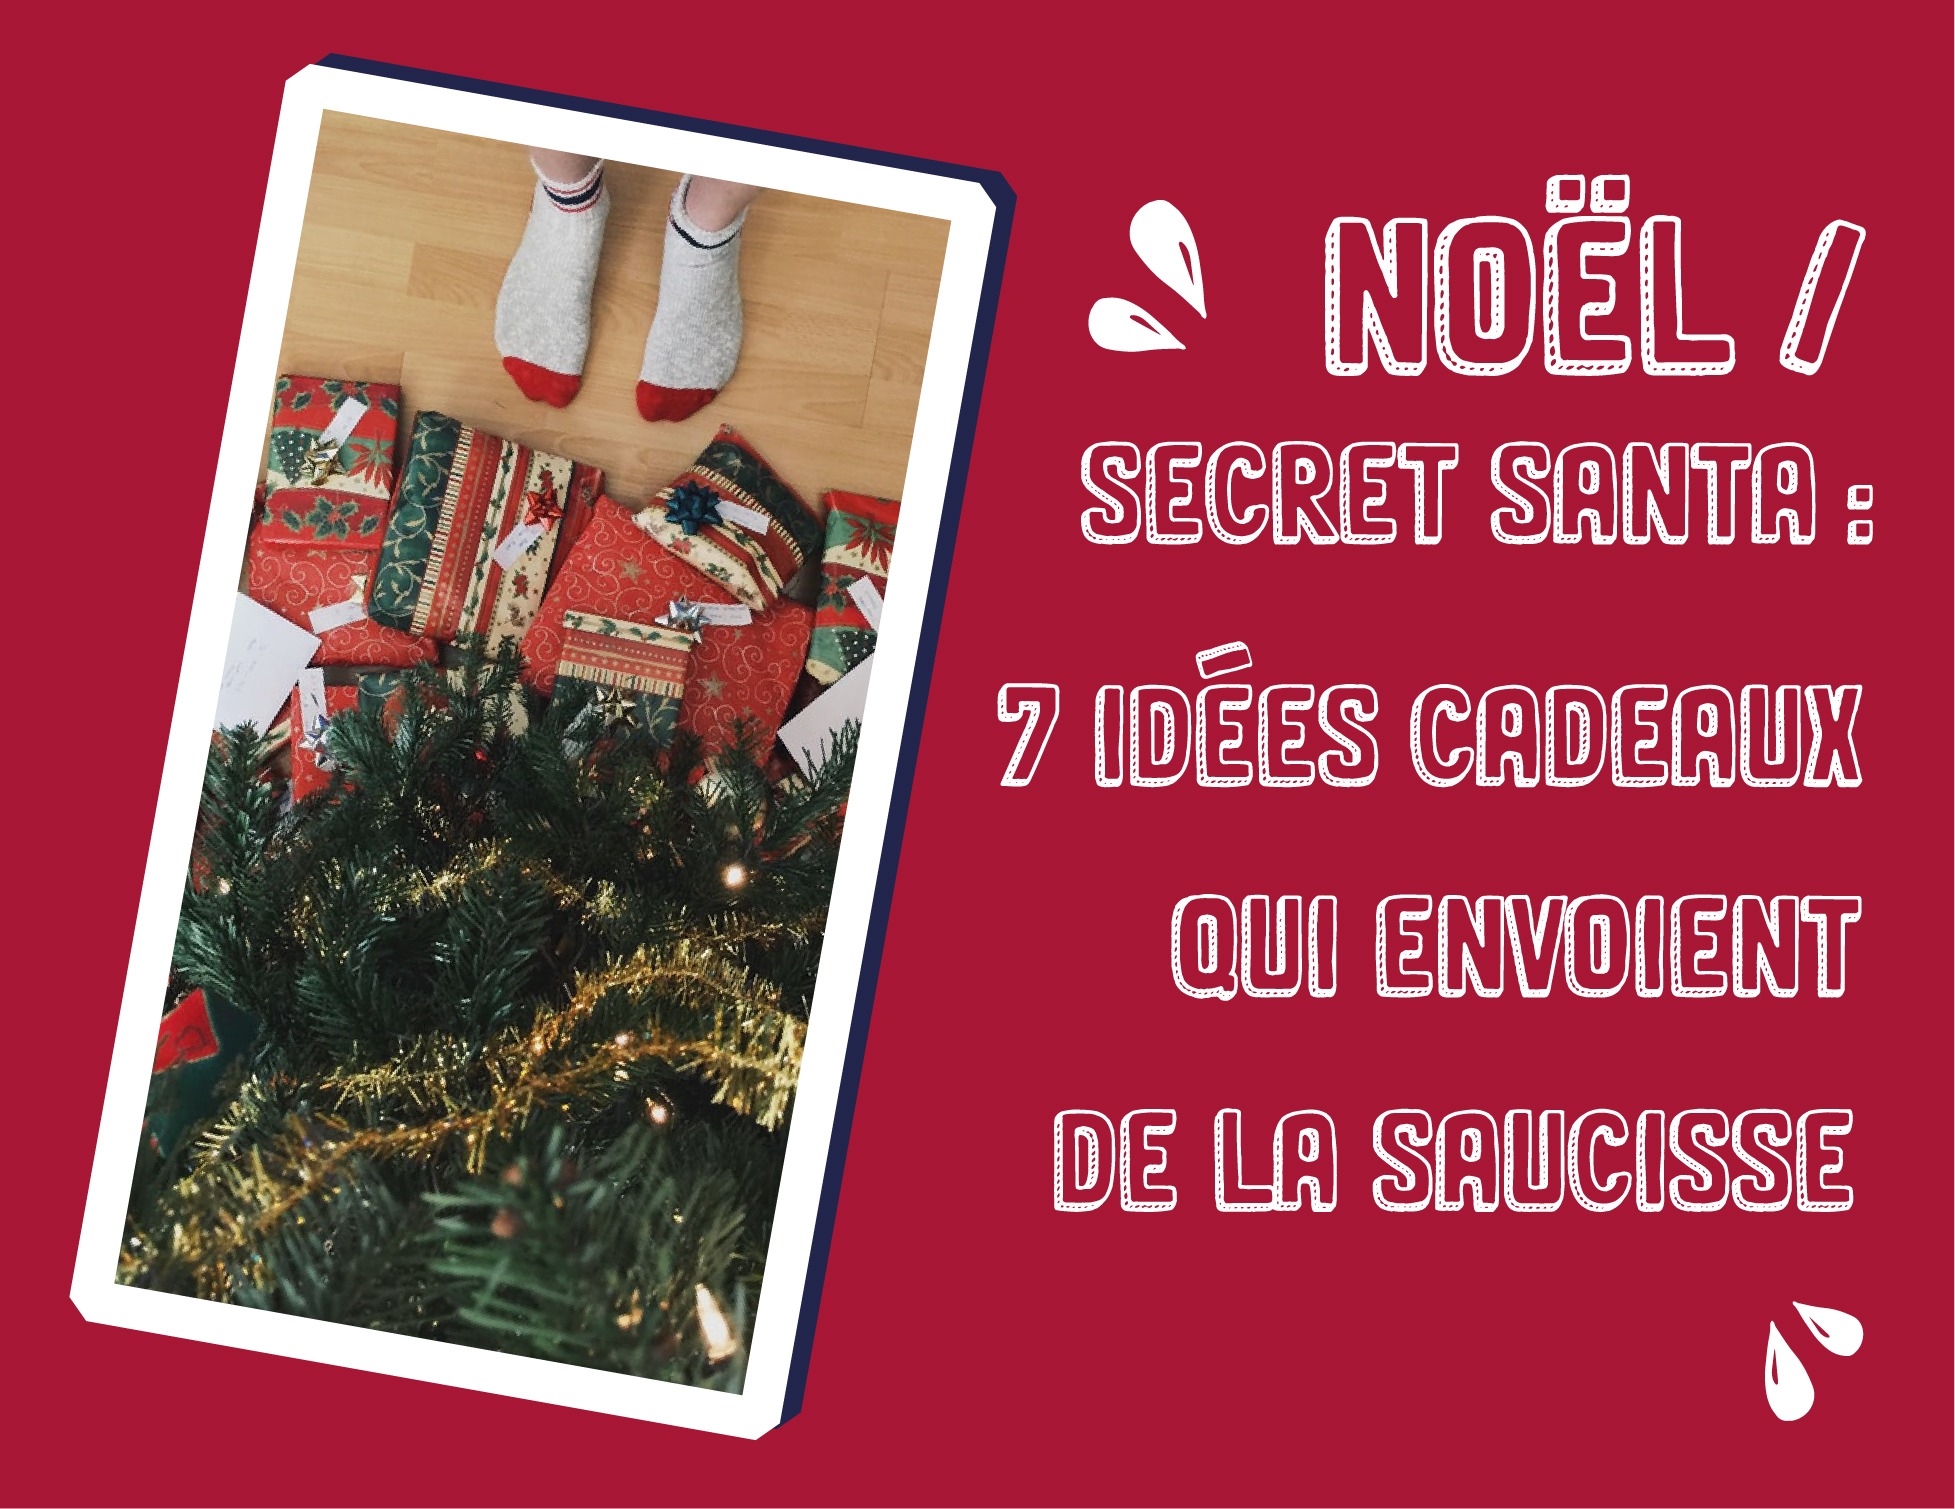 Noël / Secret Santa : 7 idées cadeaux qui envoient de la saucisse